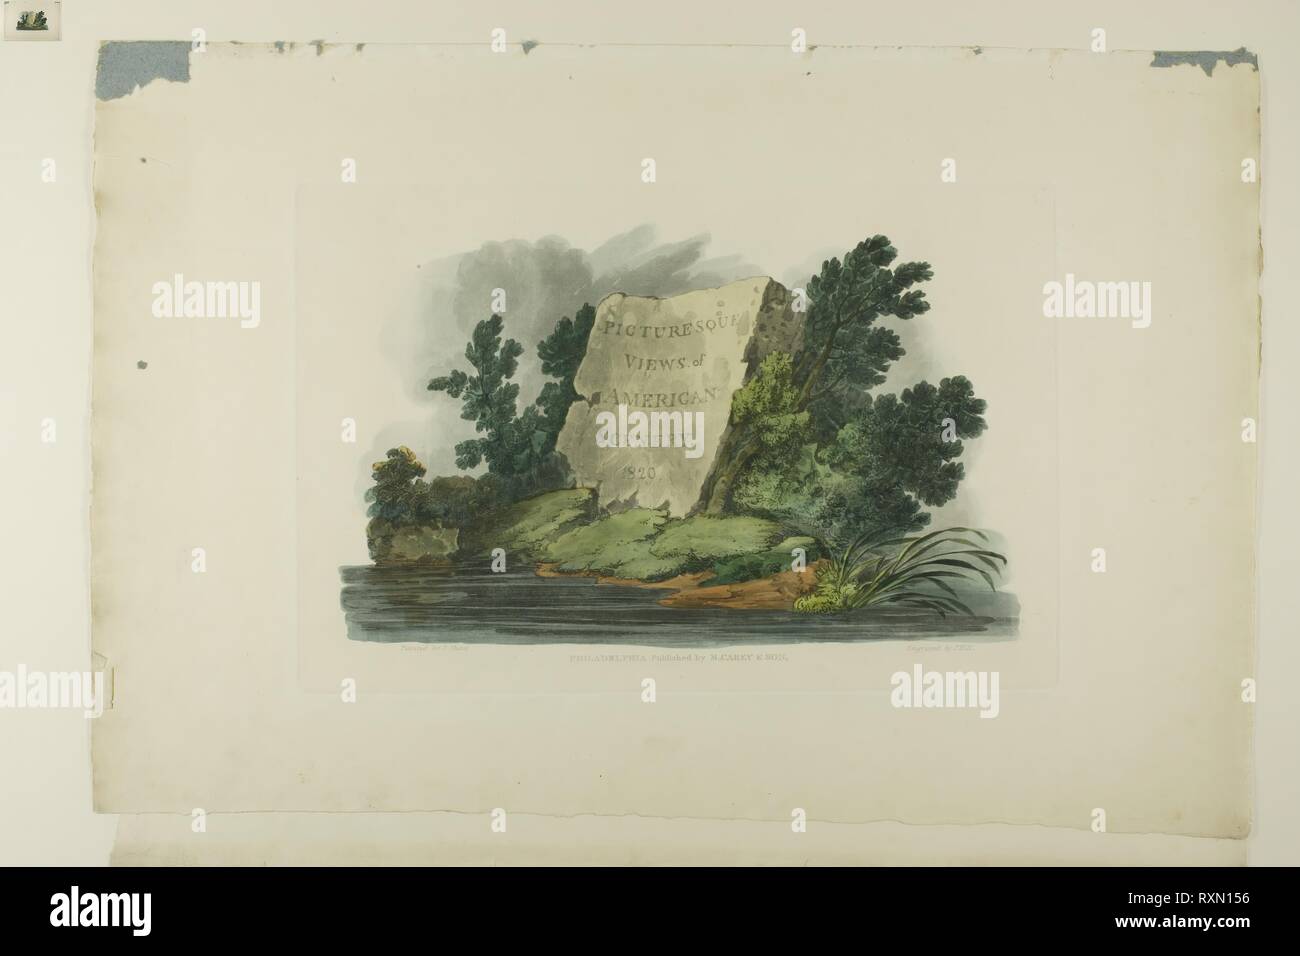 Matthew shaw immagini e fotografie stock ad alta risoluzione - Alamy